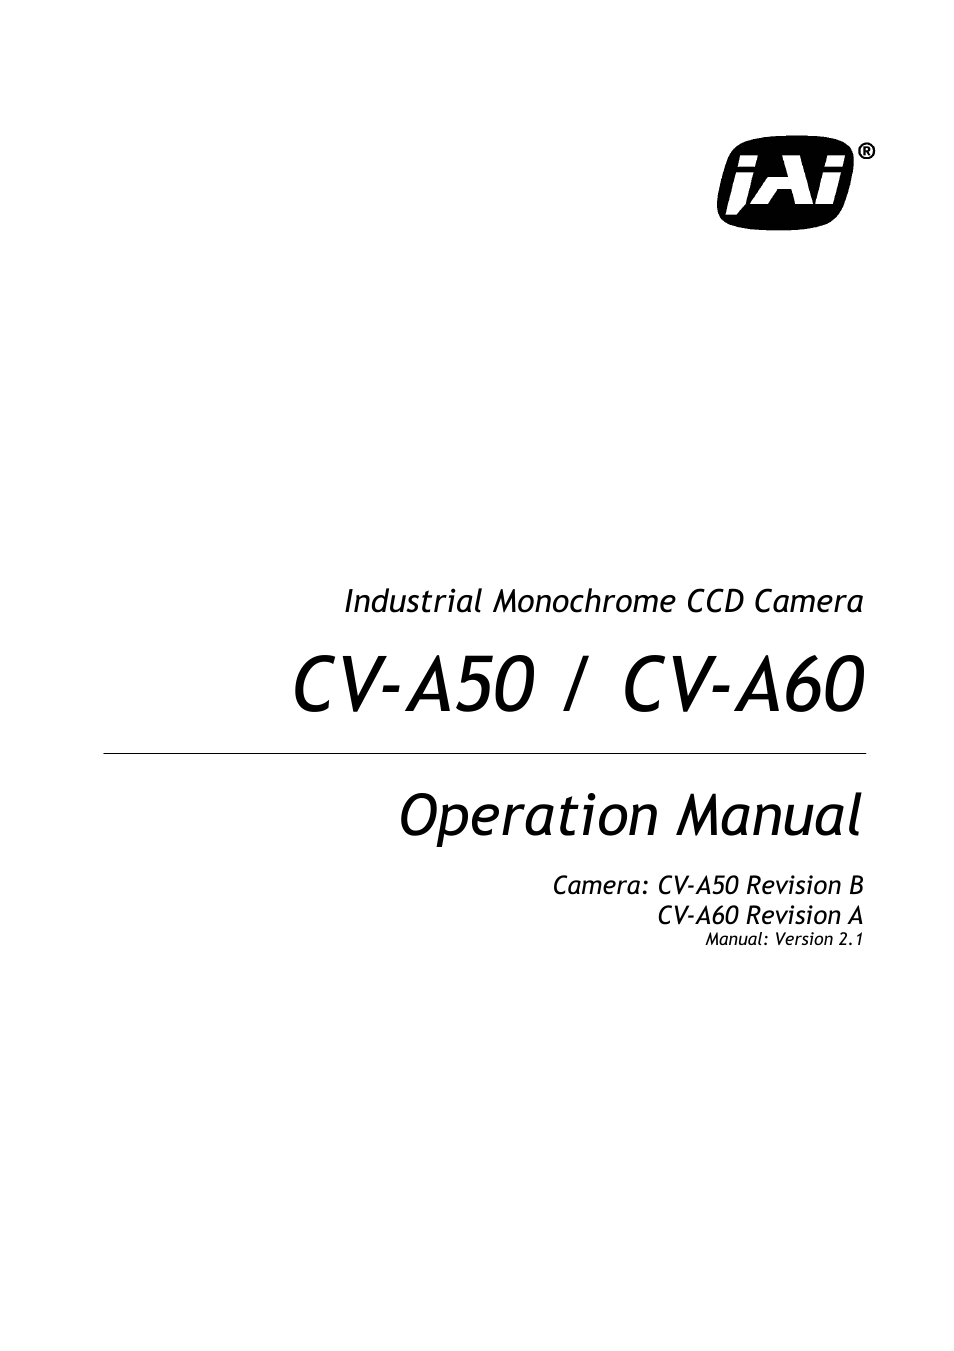 CV-A60